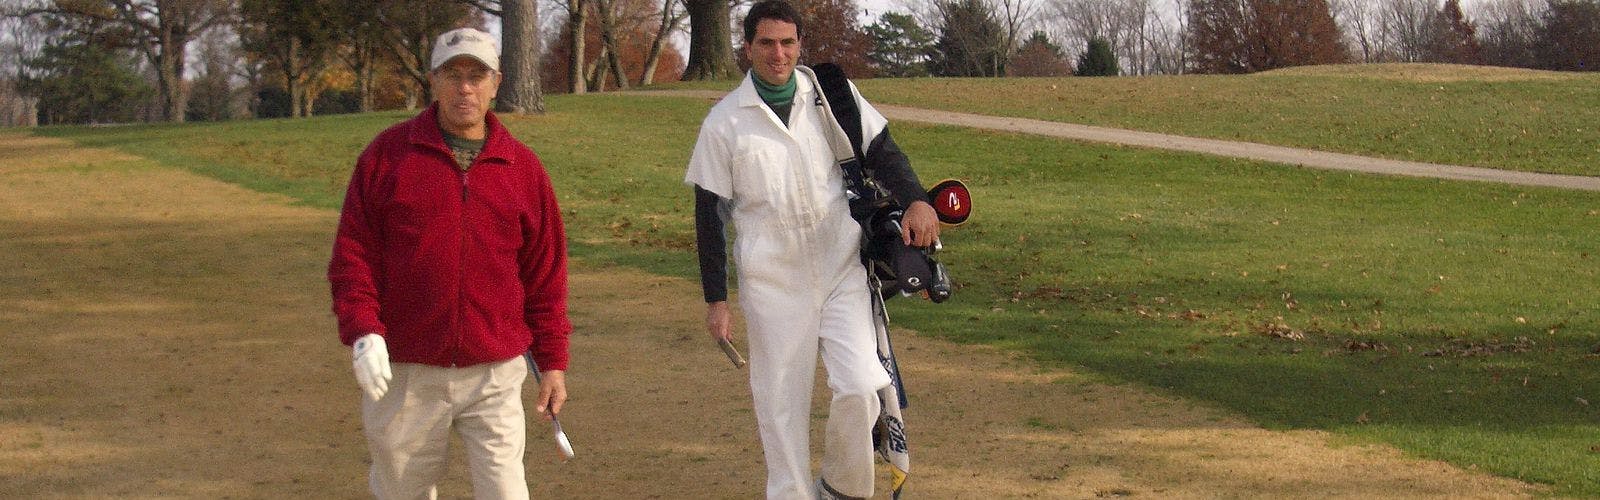 A golfer walks holding a club as his caddie carries his bag behind him.